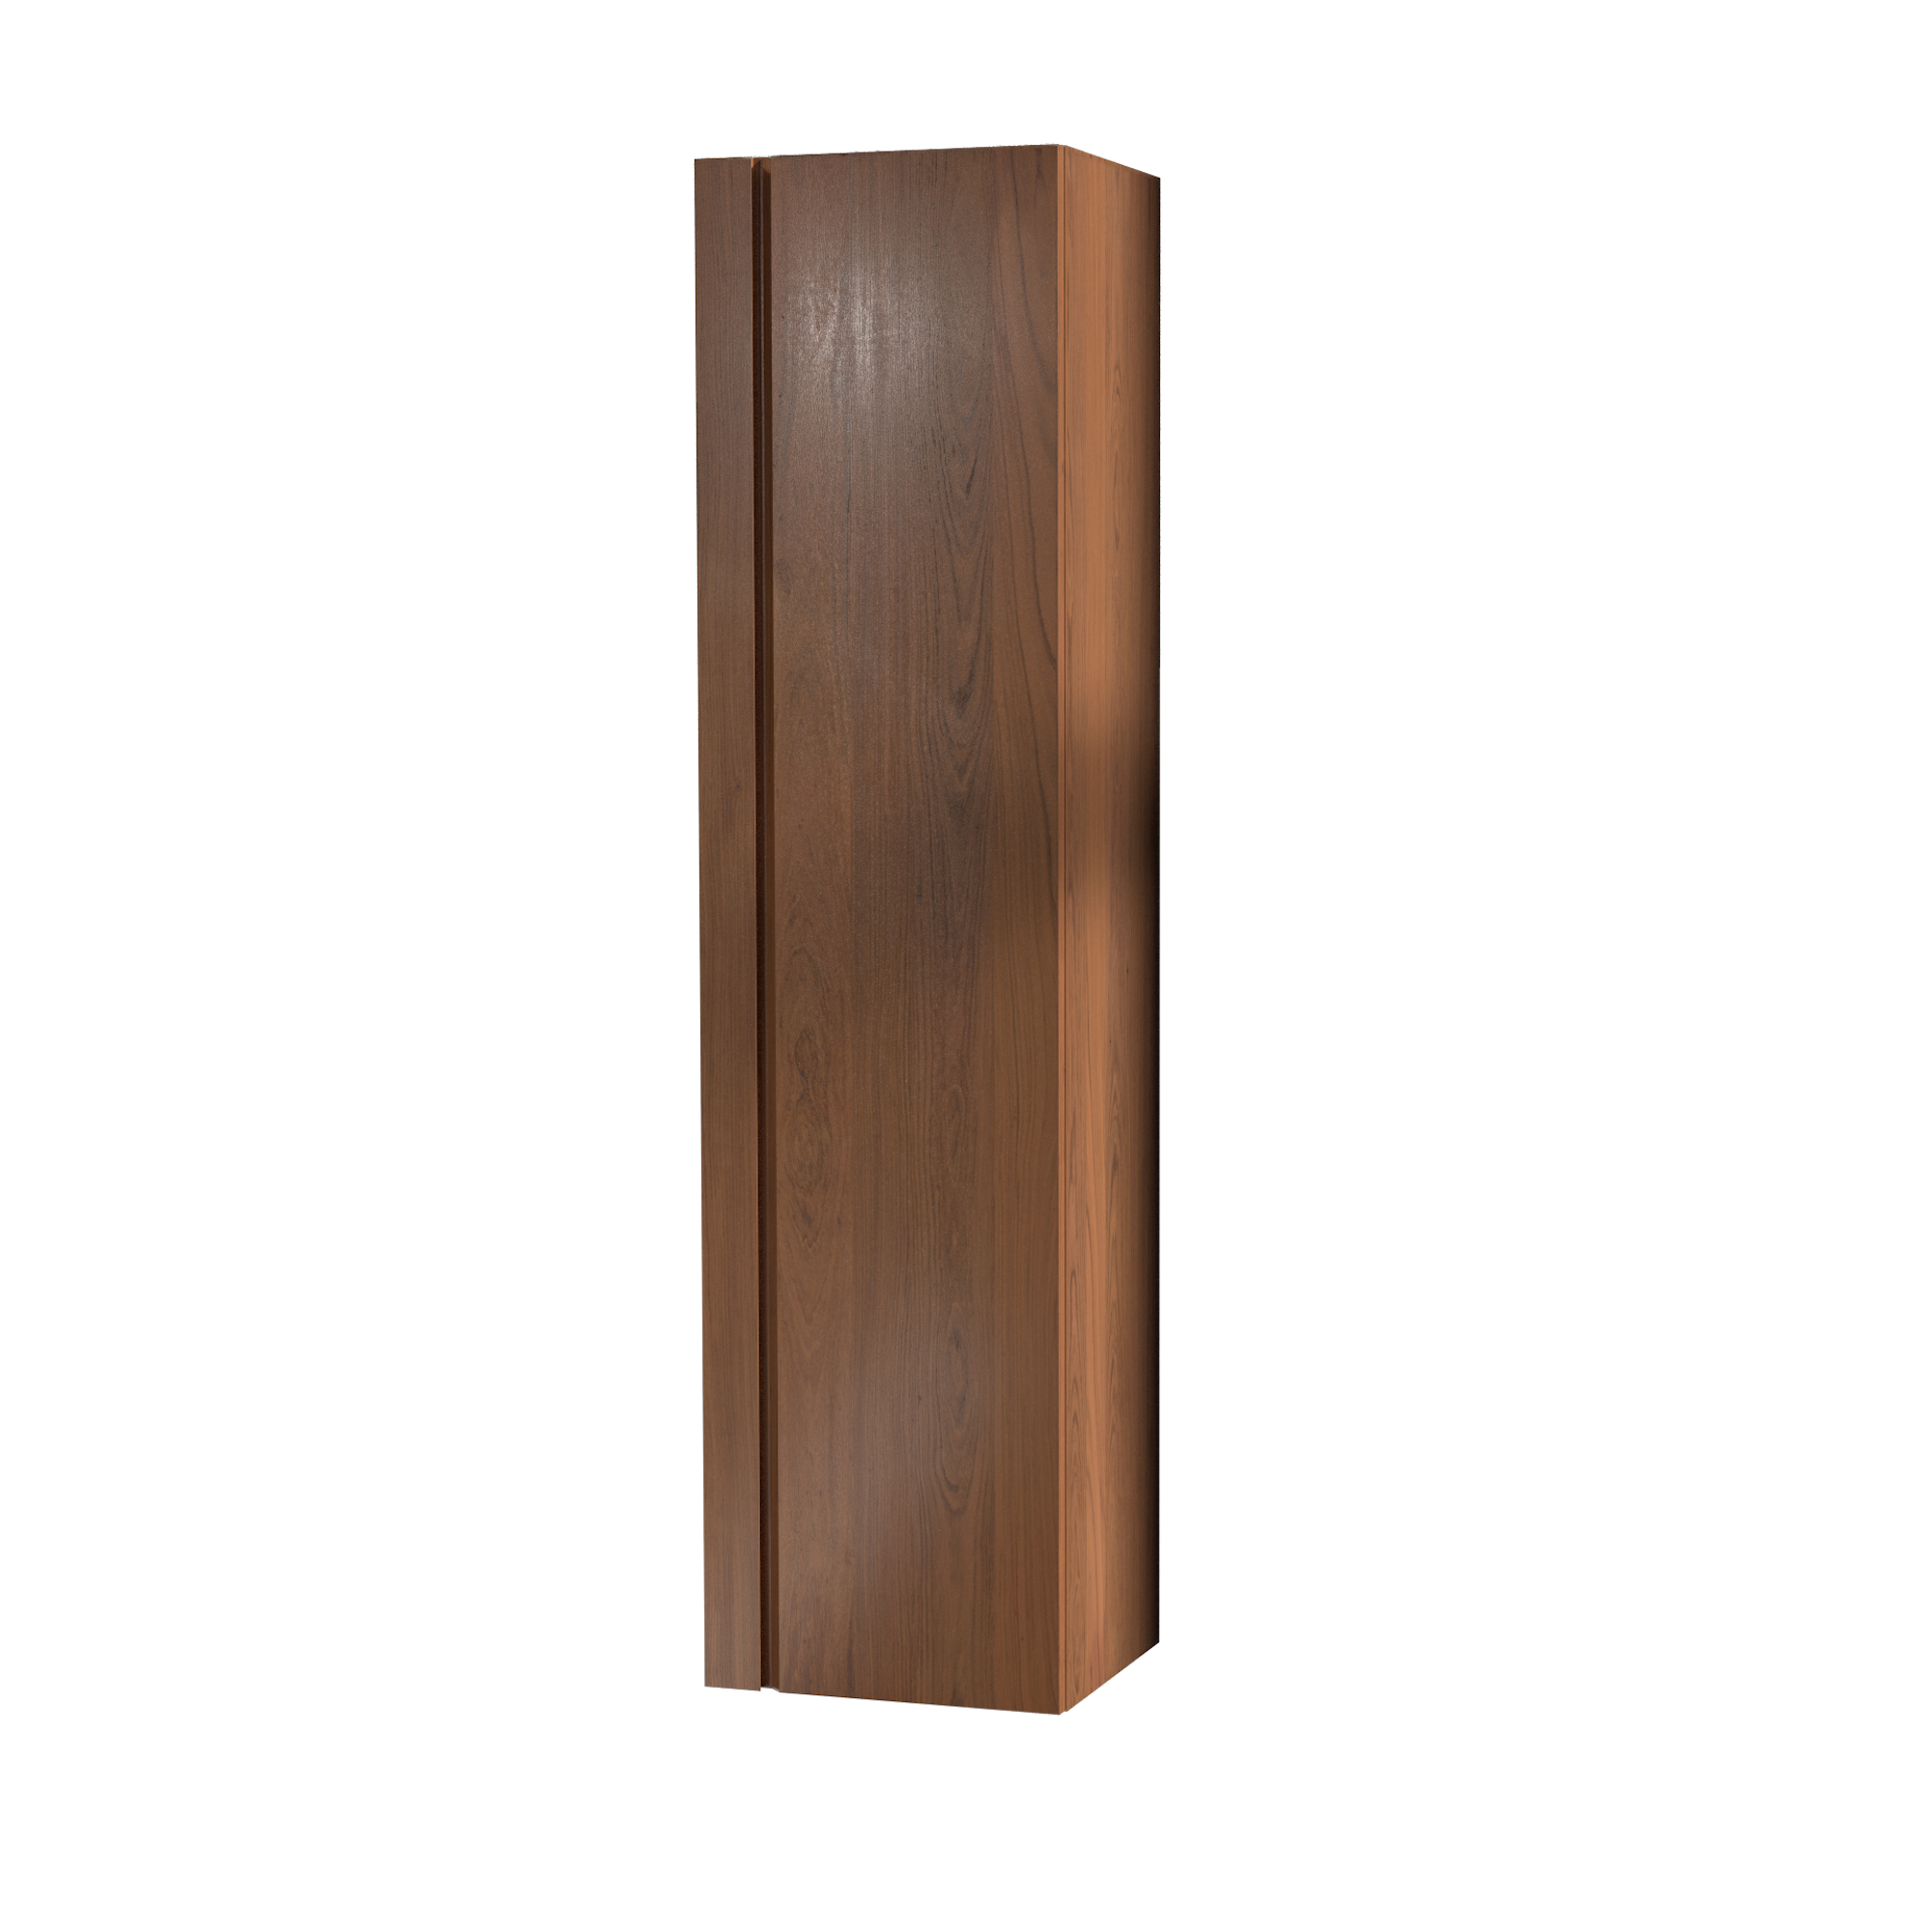 120cm wall unit - Golden Oak 1-door handleless (Matteo)